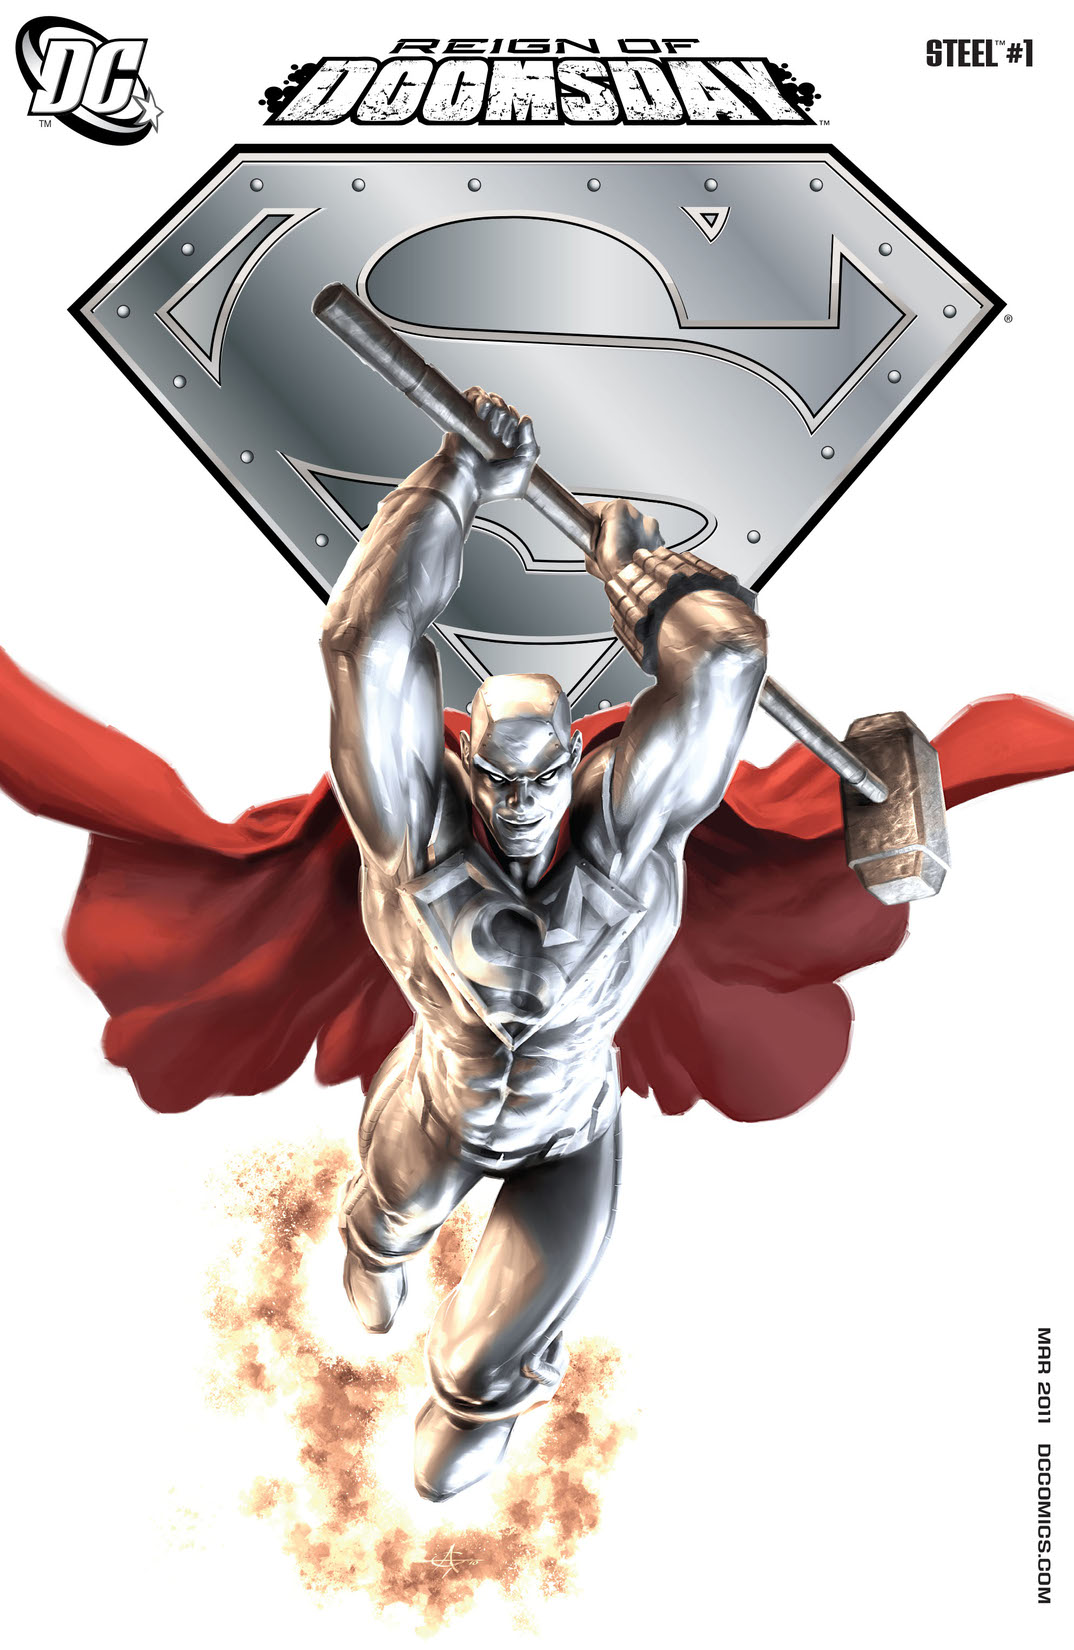 DC Comics + Steel